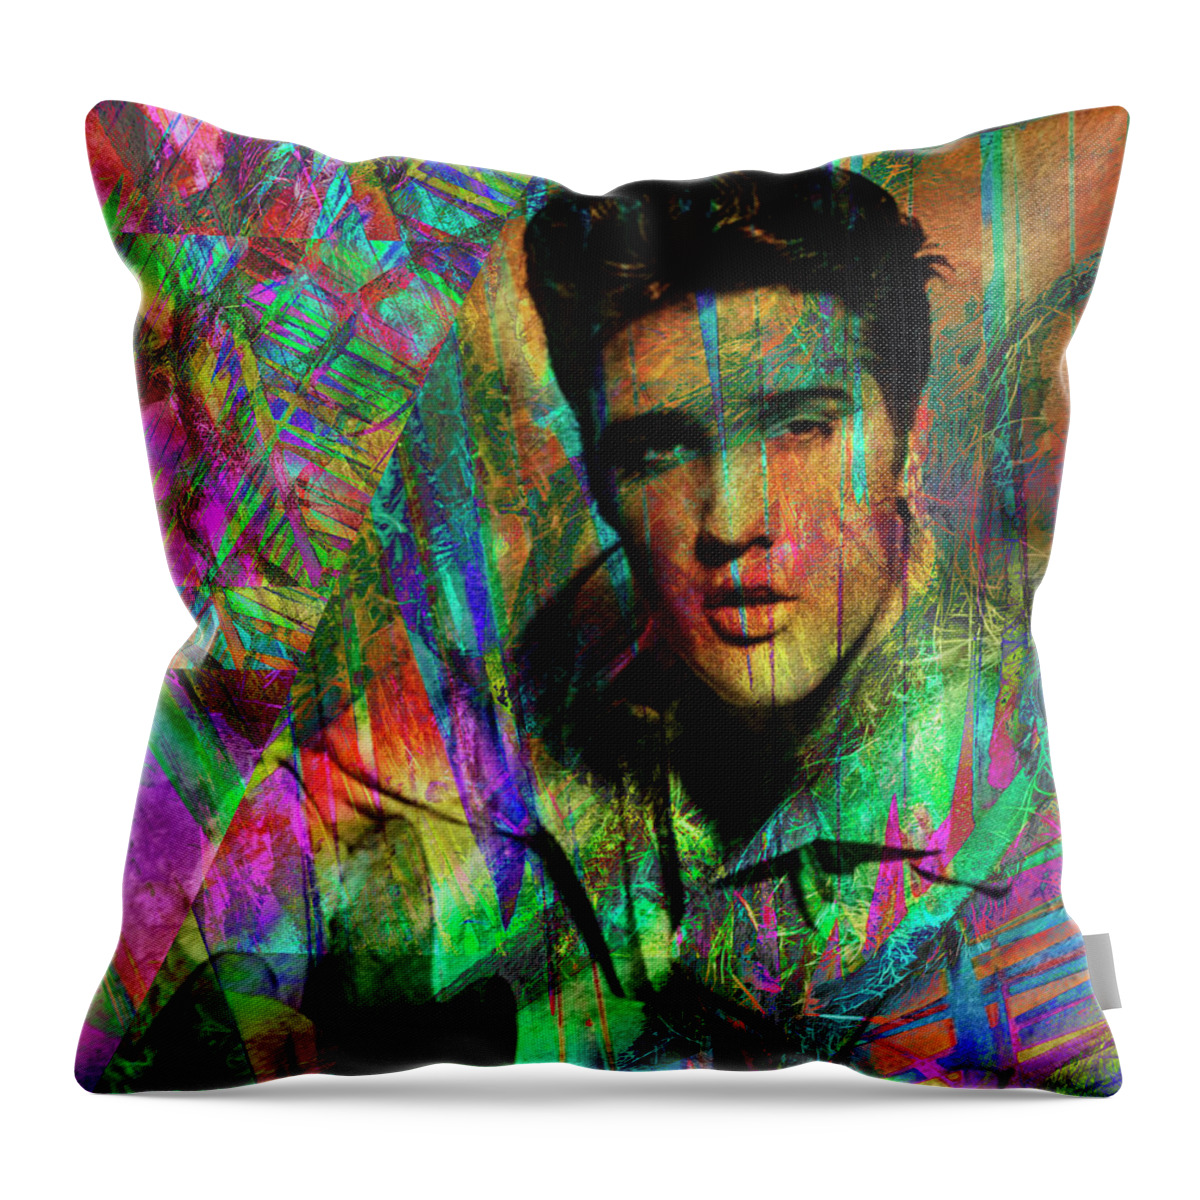 Elvis Throw Pillow featuring the digital art All Shook Up by Rob Hemphill